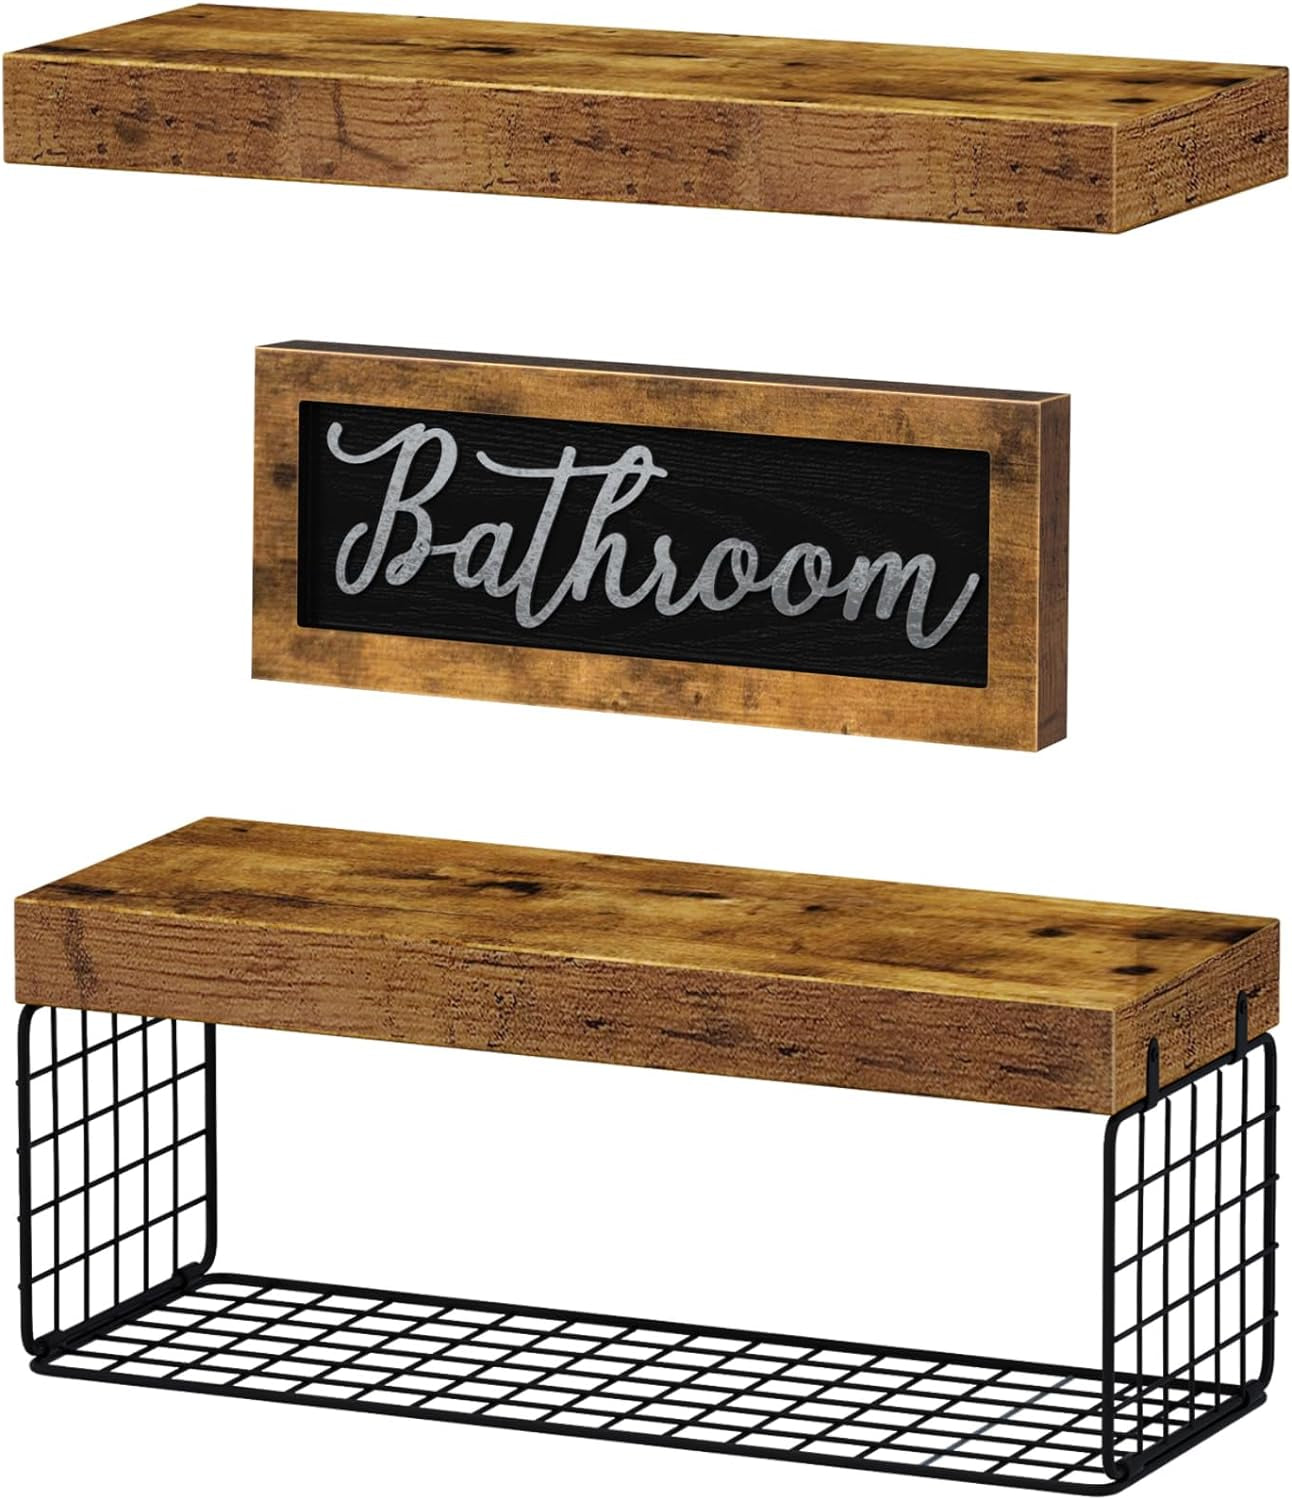 Bathroom Furniture Sets, Shelves over Toilet Decor, Rustic Brown